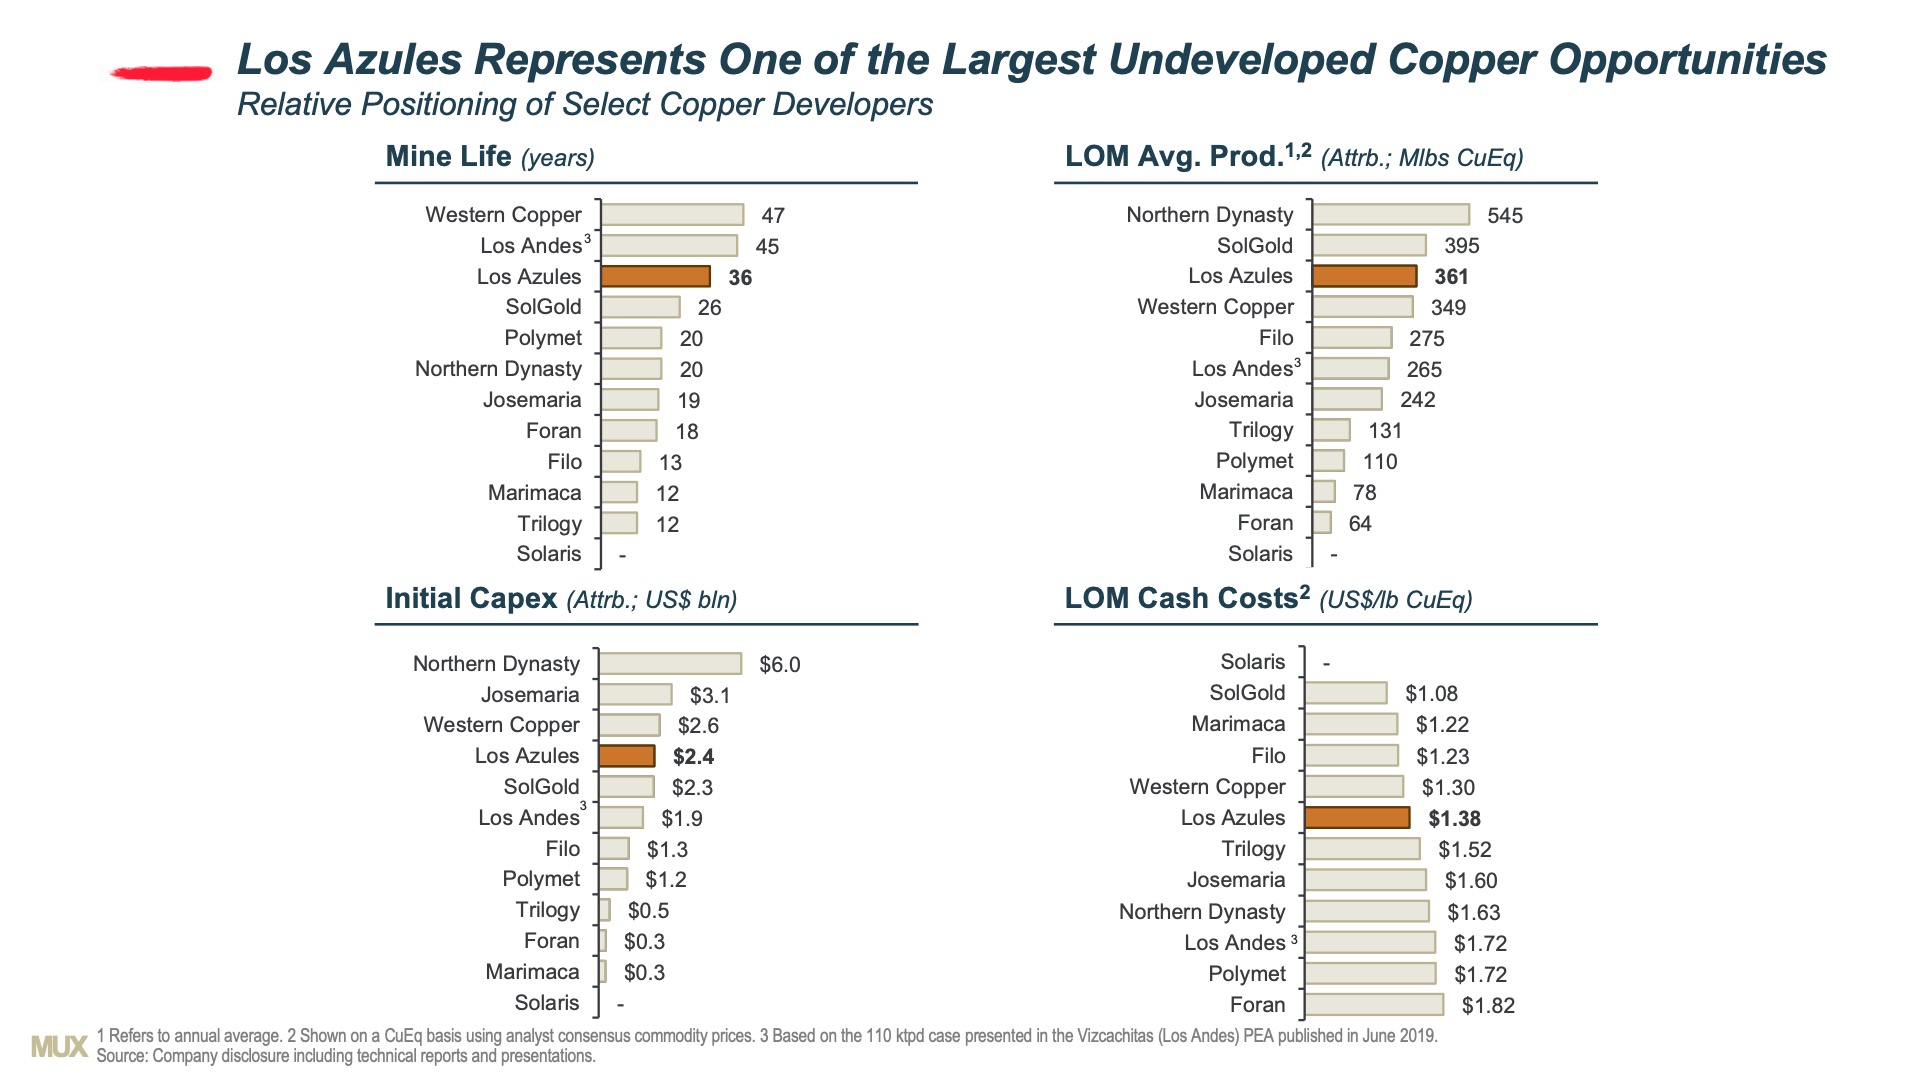 Copper Developer Comparisons